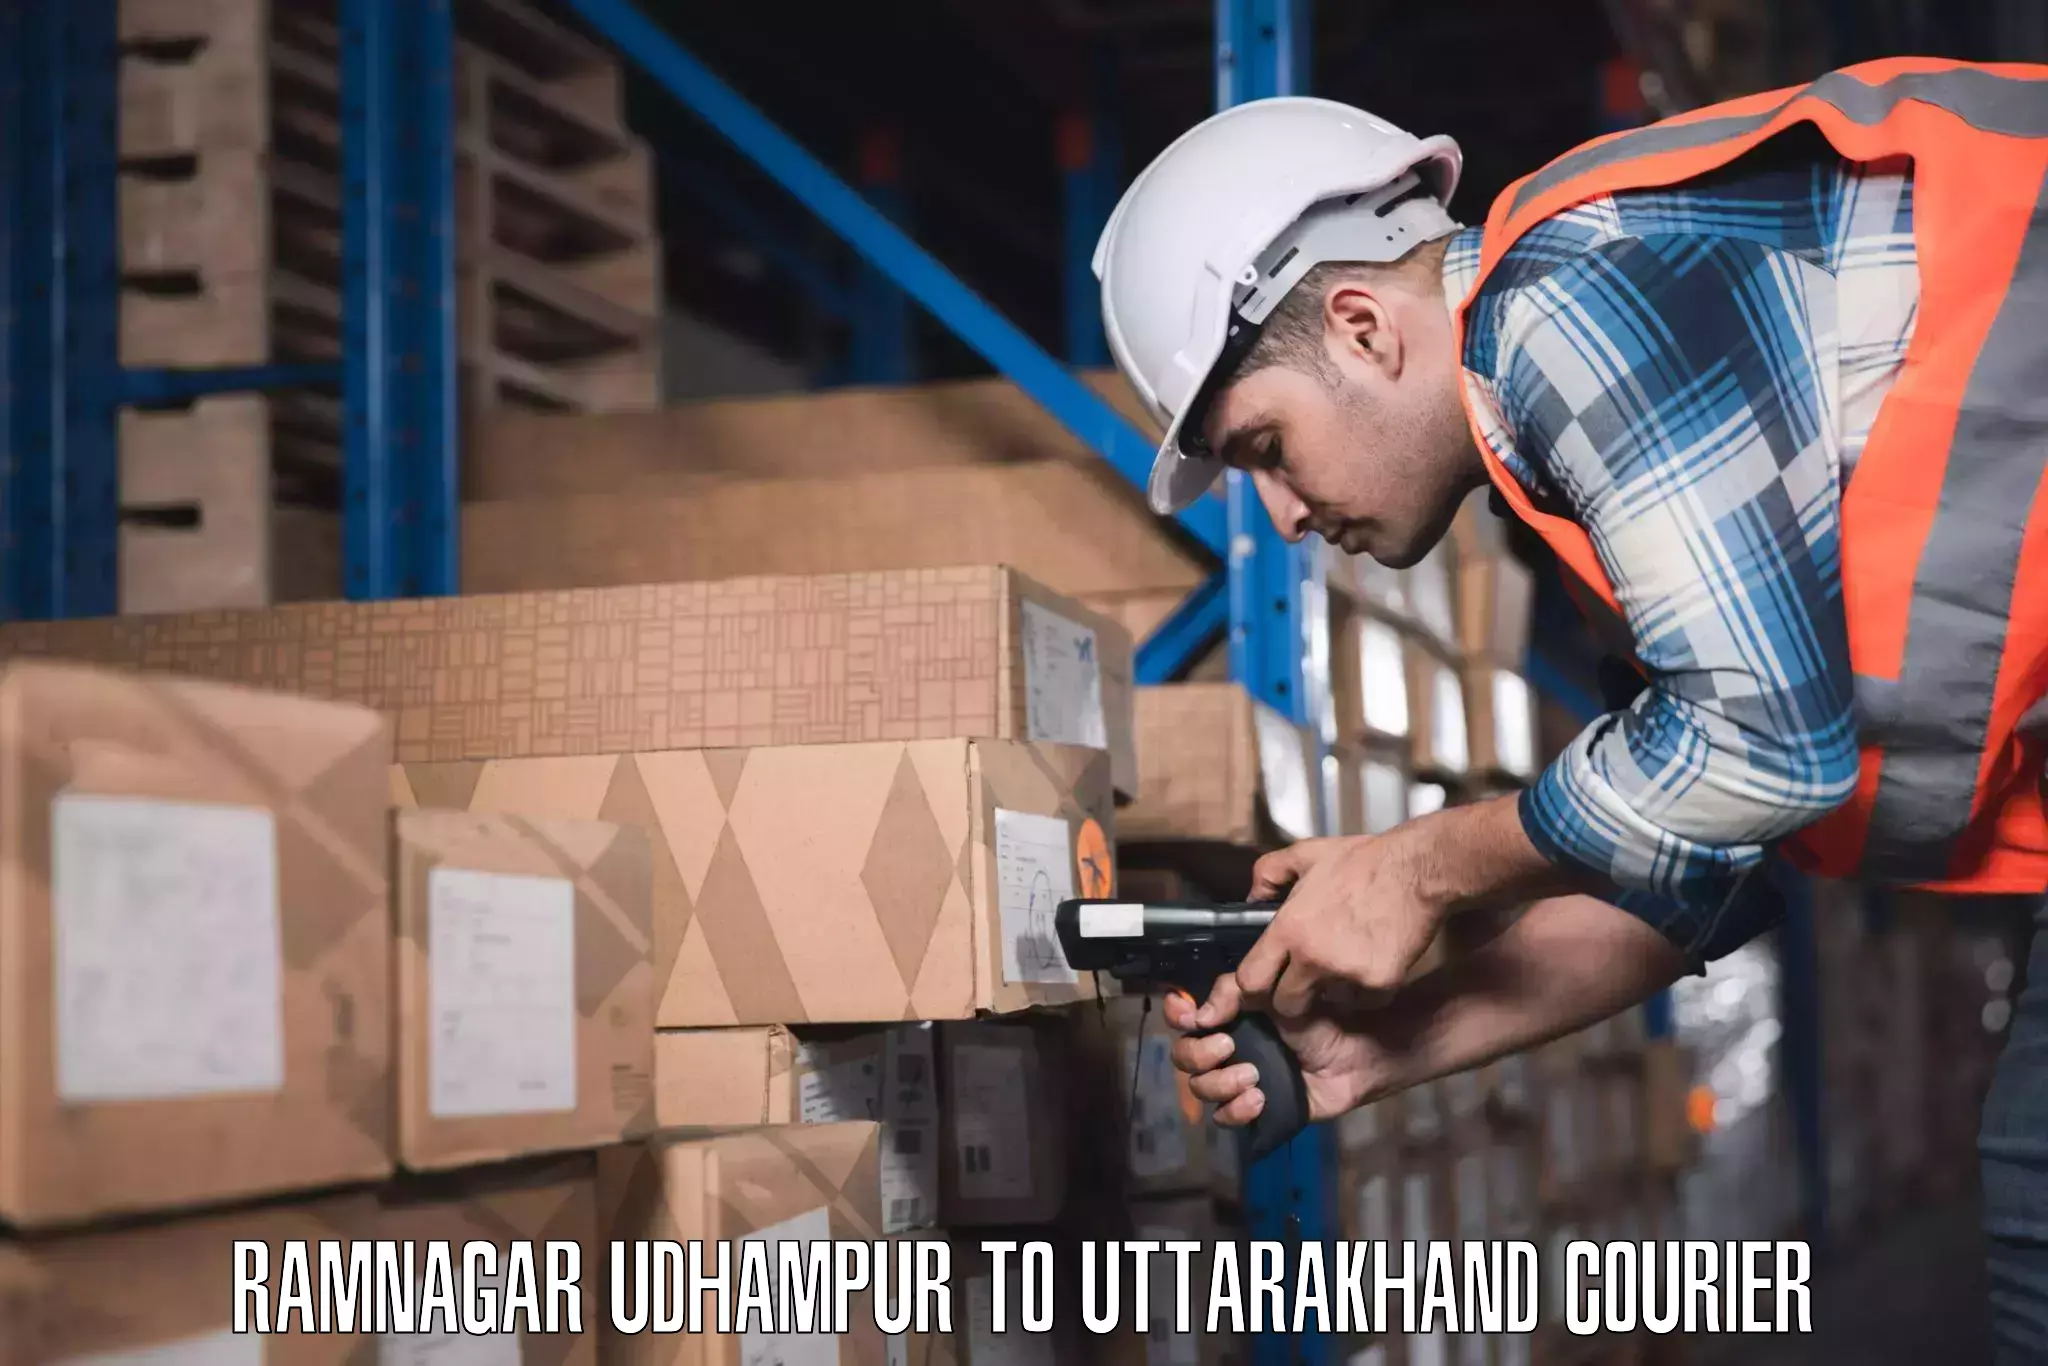 Baggage shipping experts Ramnagar Udhampur to Nainital